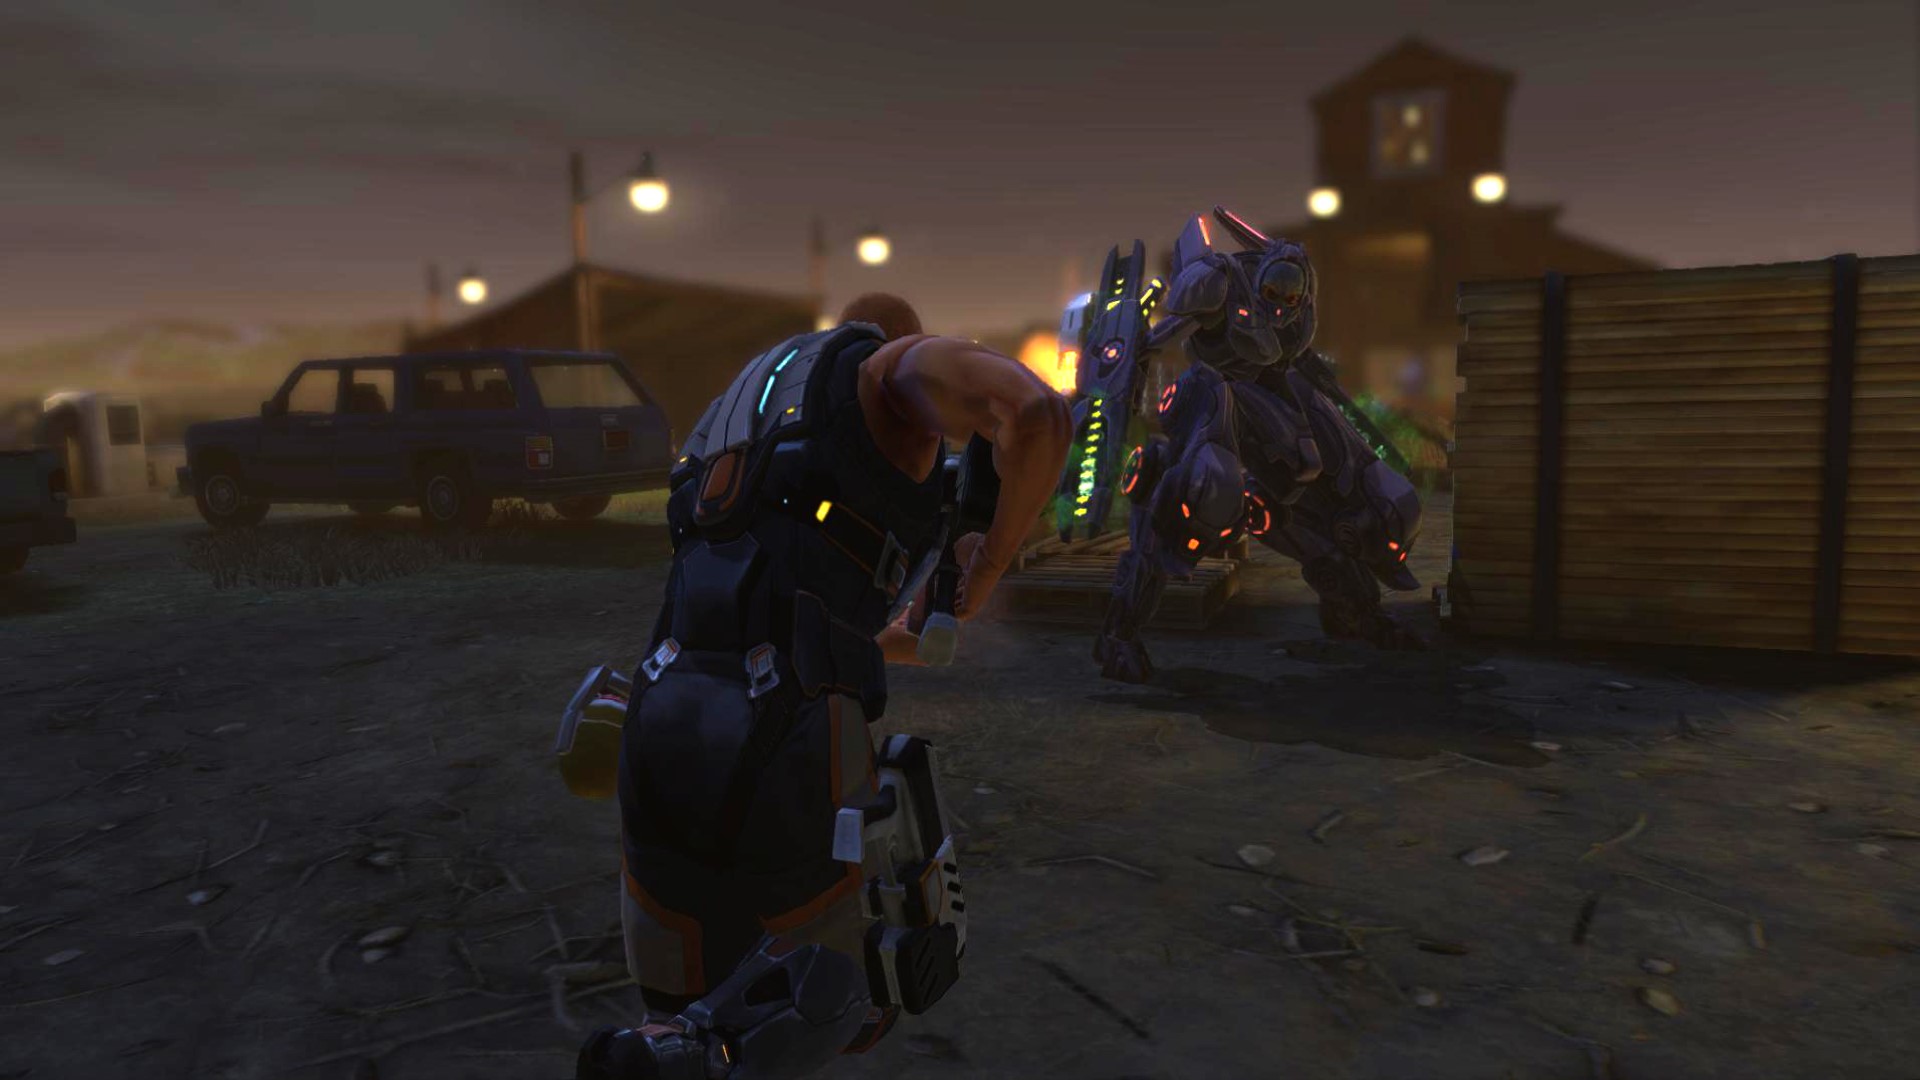 משחקי אסטרטגיה ניידים הטובים ביותר: XCOM: אויב בפנים. תמונה מציגה שני אנשים בשריון עתידני המחזיק תותחים